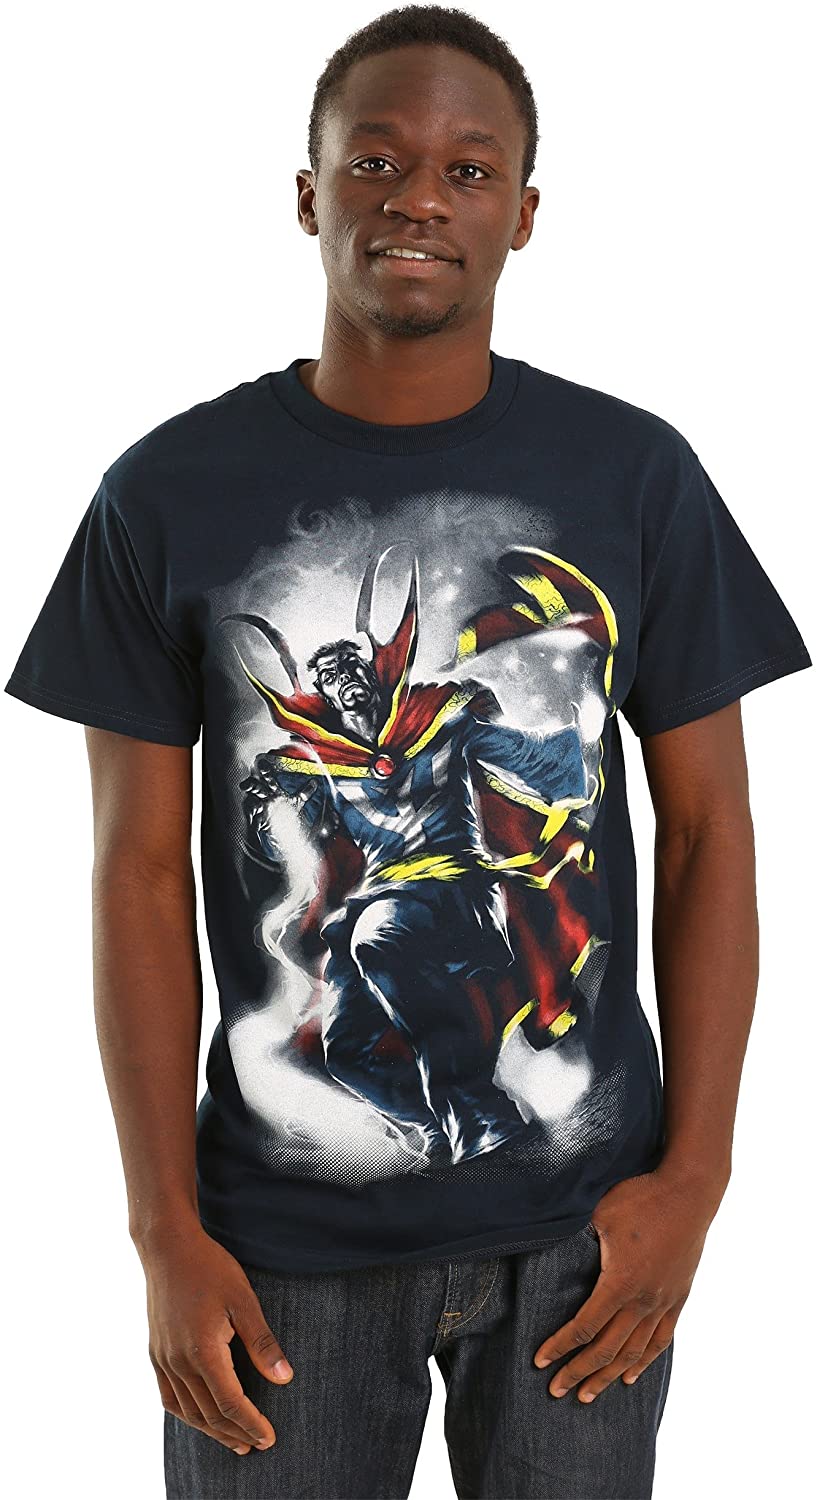 Doctor Strange "Mythos" Short Sleeve T-Shirt - Official Marvel Tee